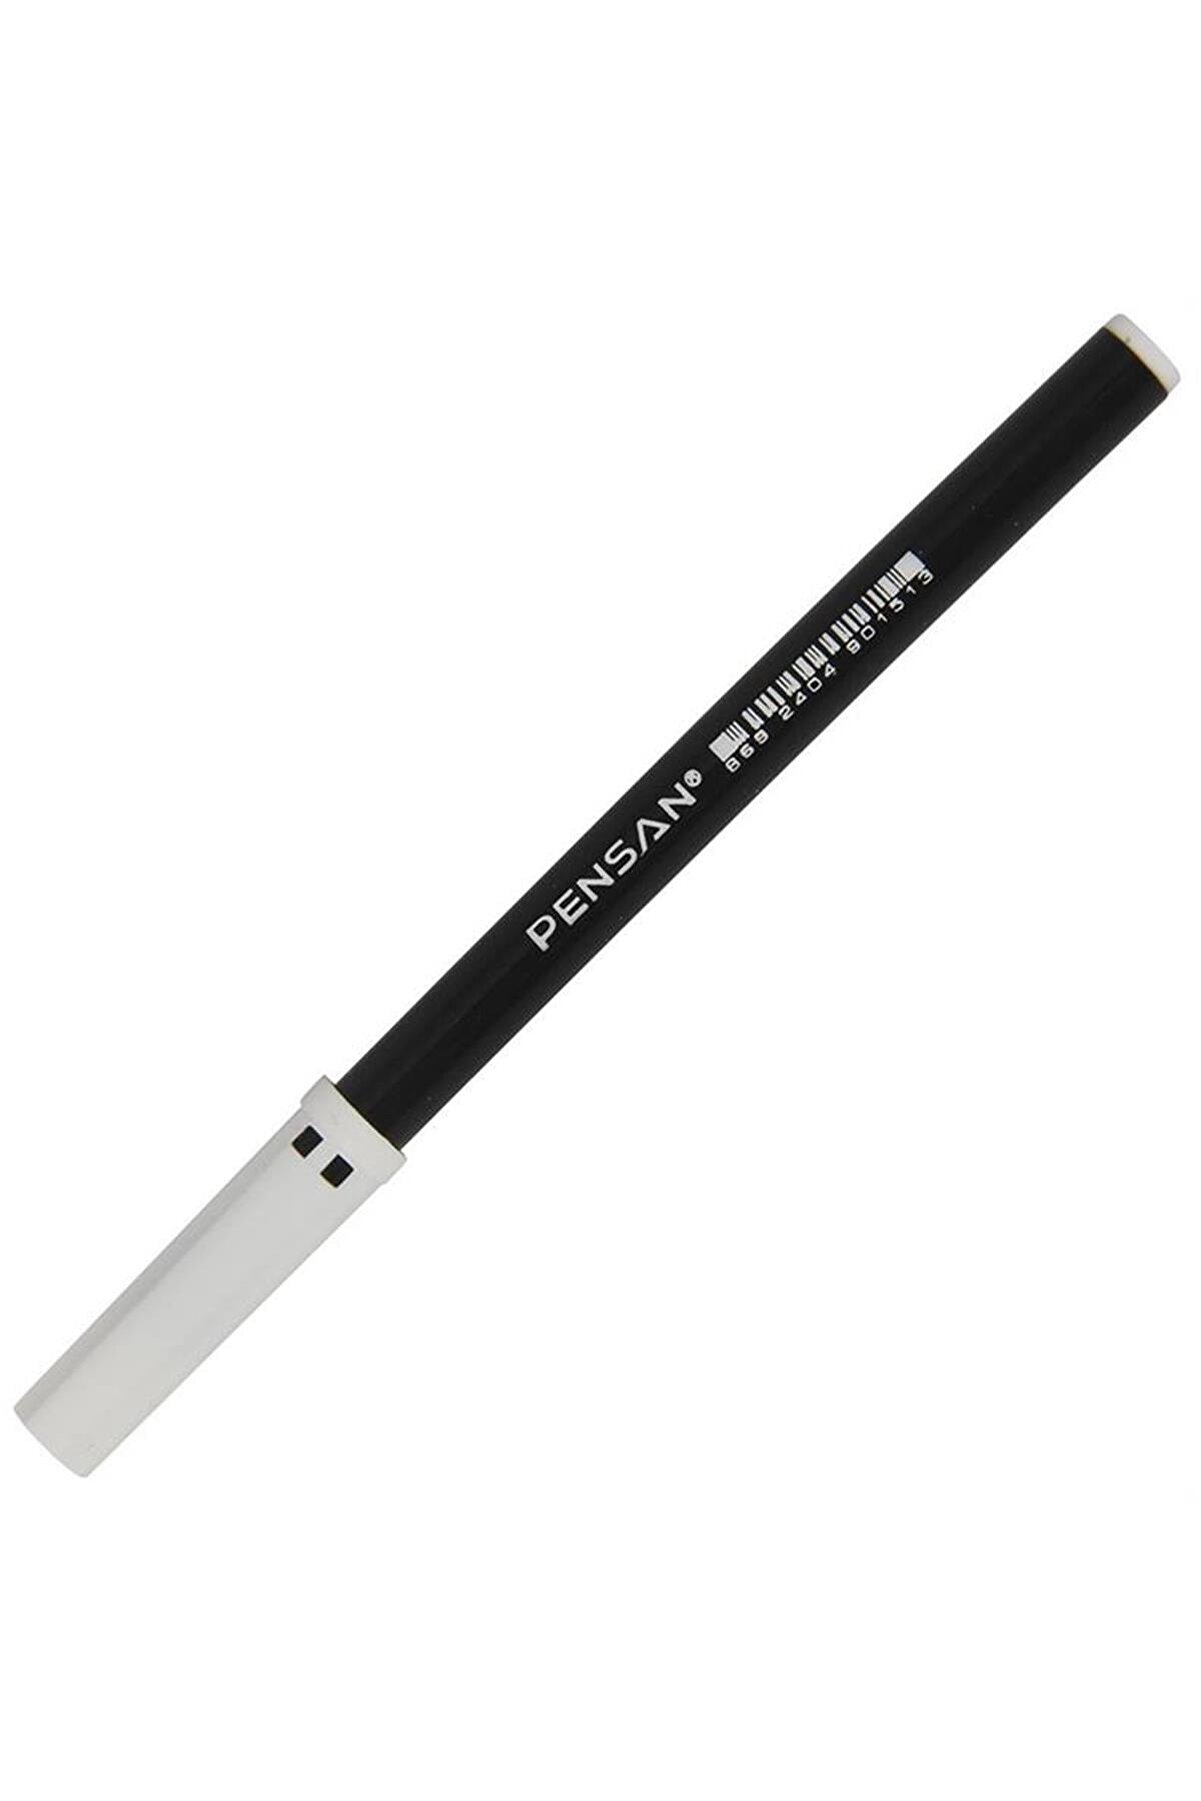 Pensan Marka: 3003 Siyah Keçeli Kalem Kategori: Keçeli Kalemler